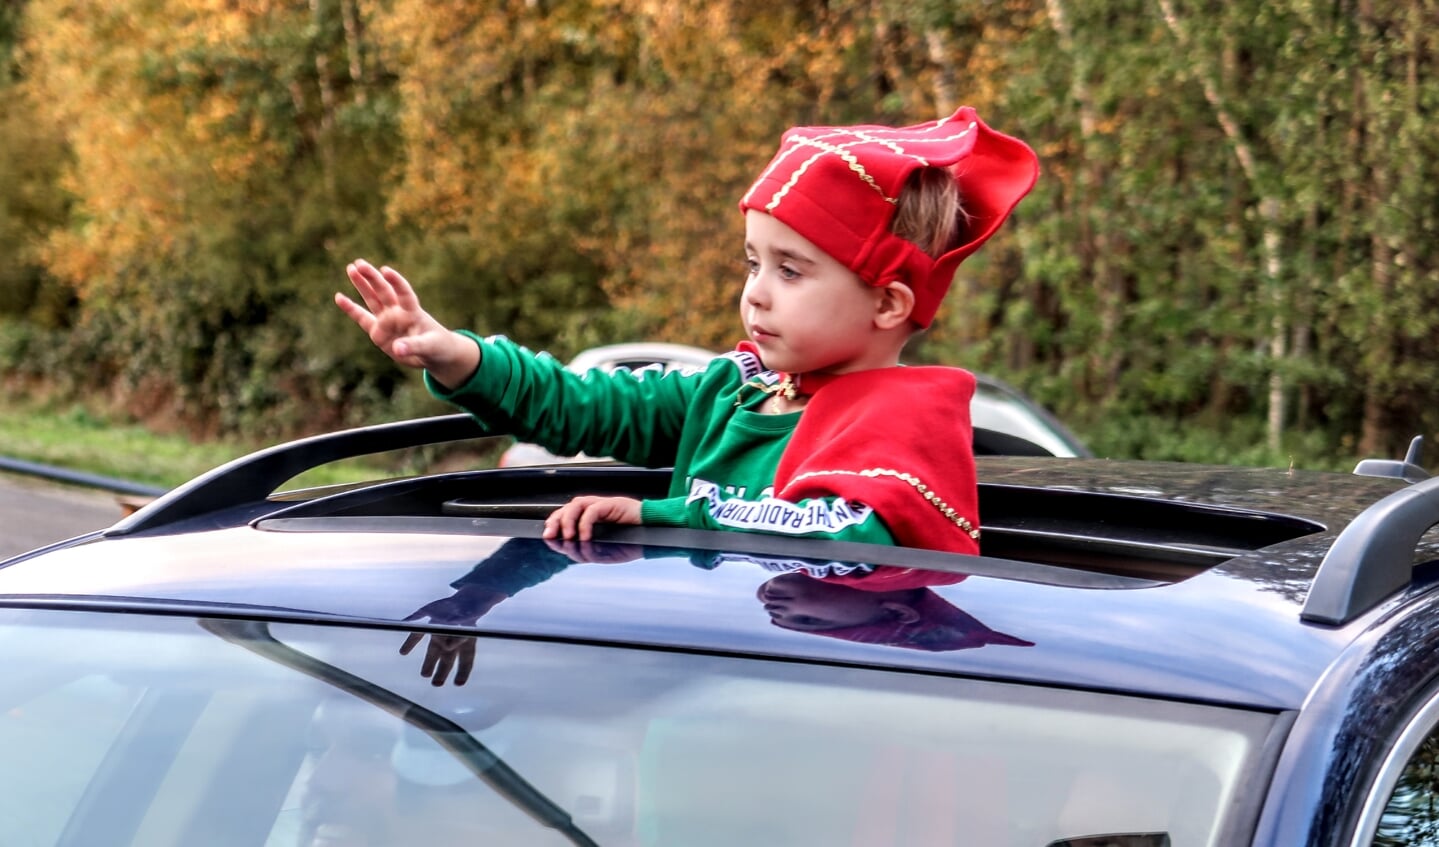 Via het open dak van de auto wordt gezwaaid naar Sinterklaas in de Sinterklaas-drive through. Foto: Luuk Stam